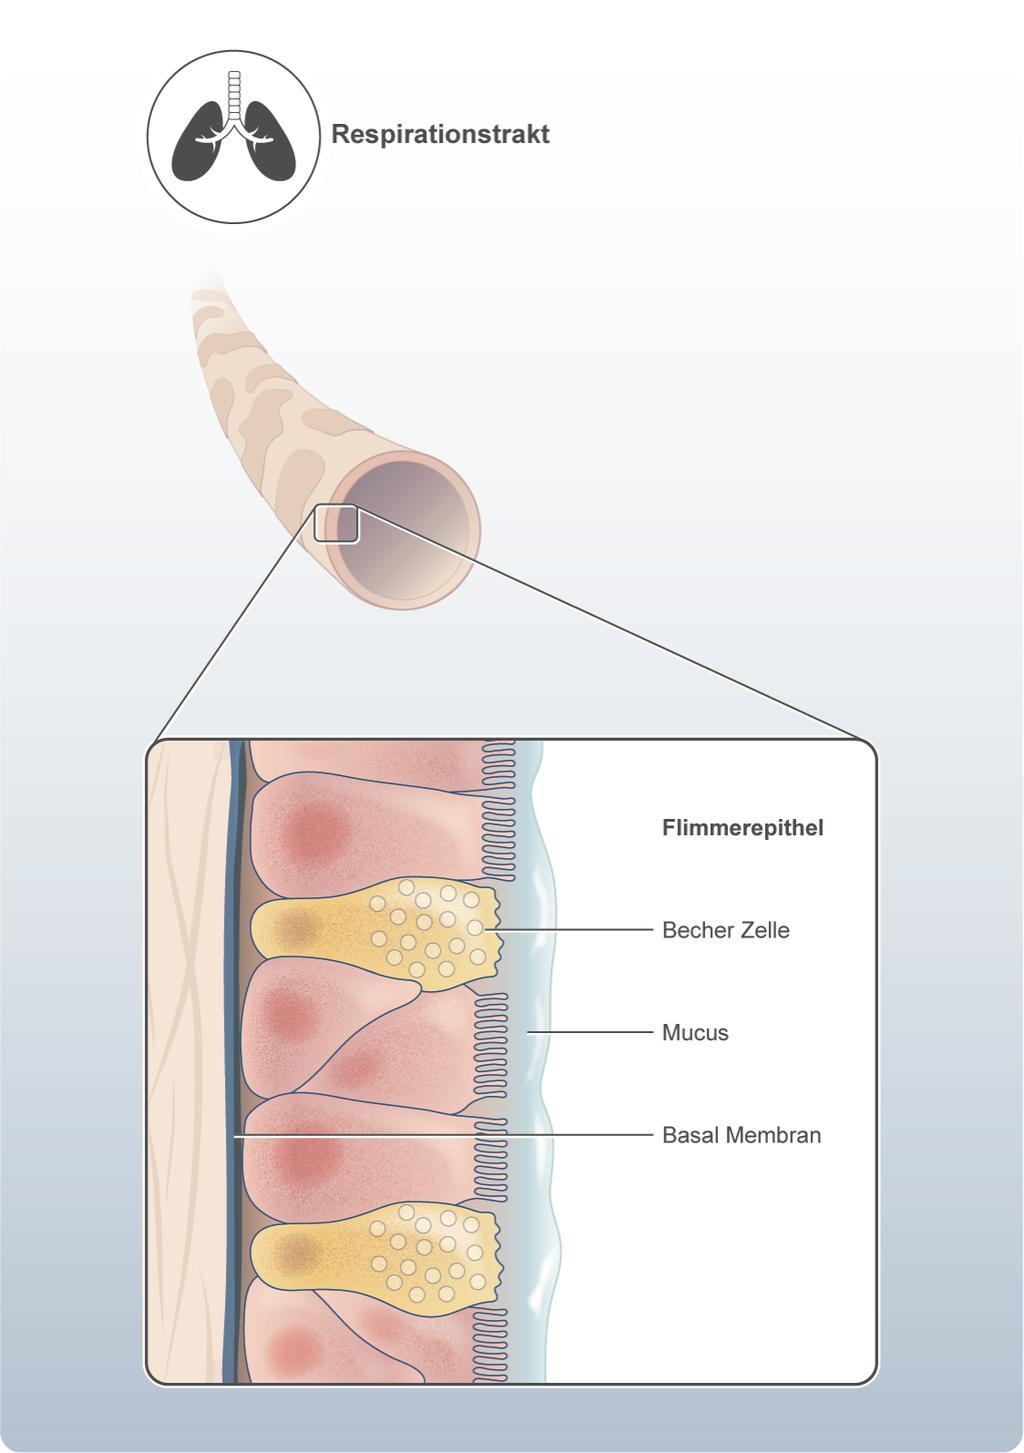 Eintritt über den Respirationstrakt Mucus